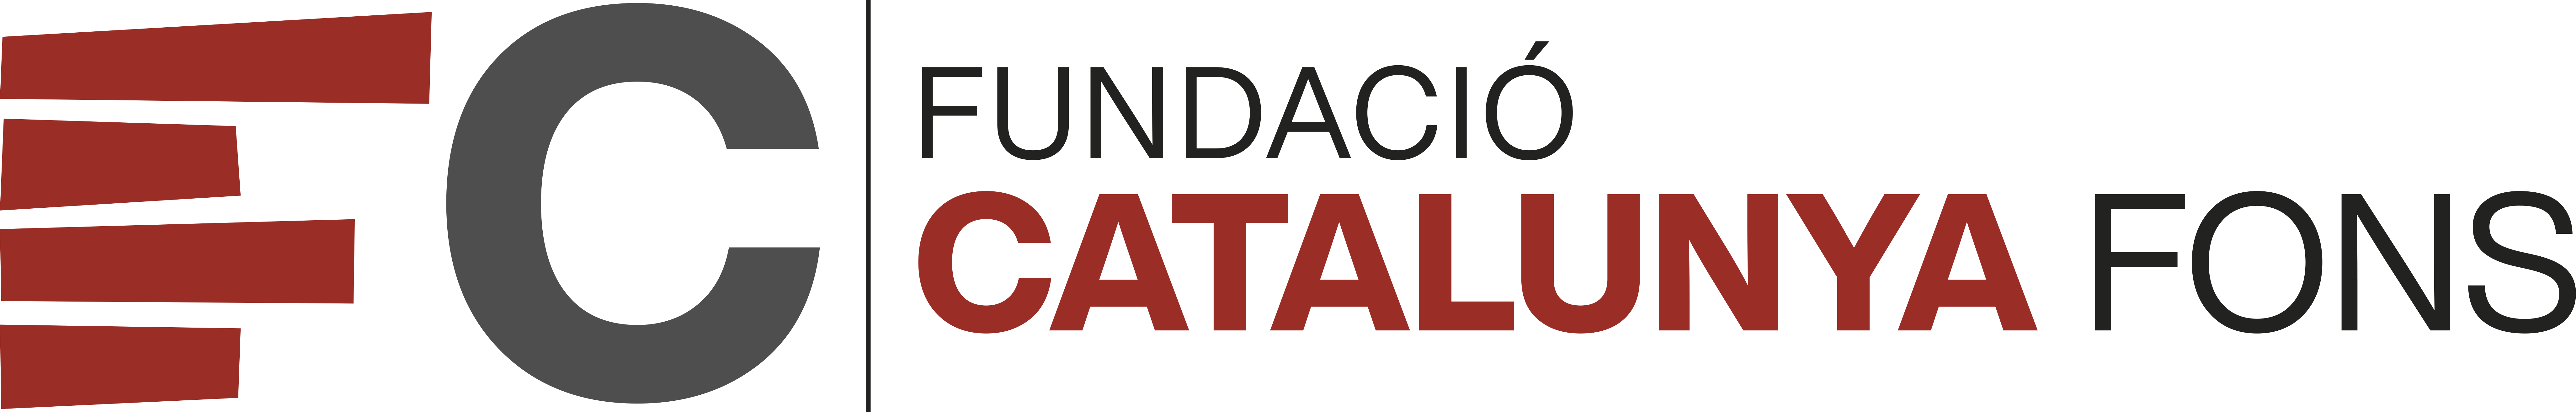 Logo Fundació Catalunya Fons